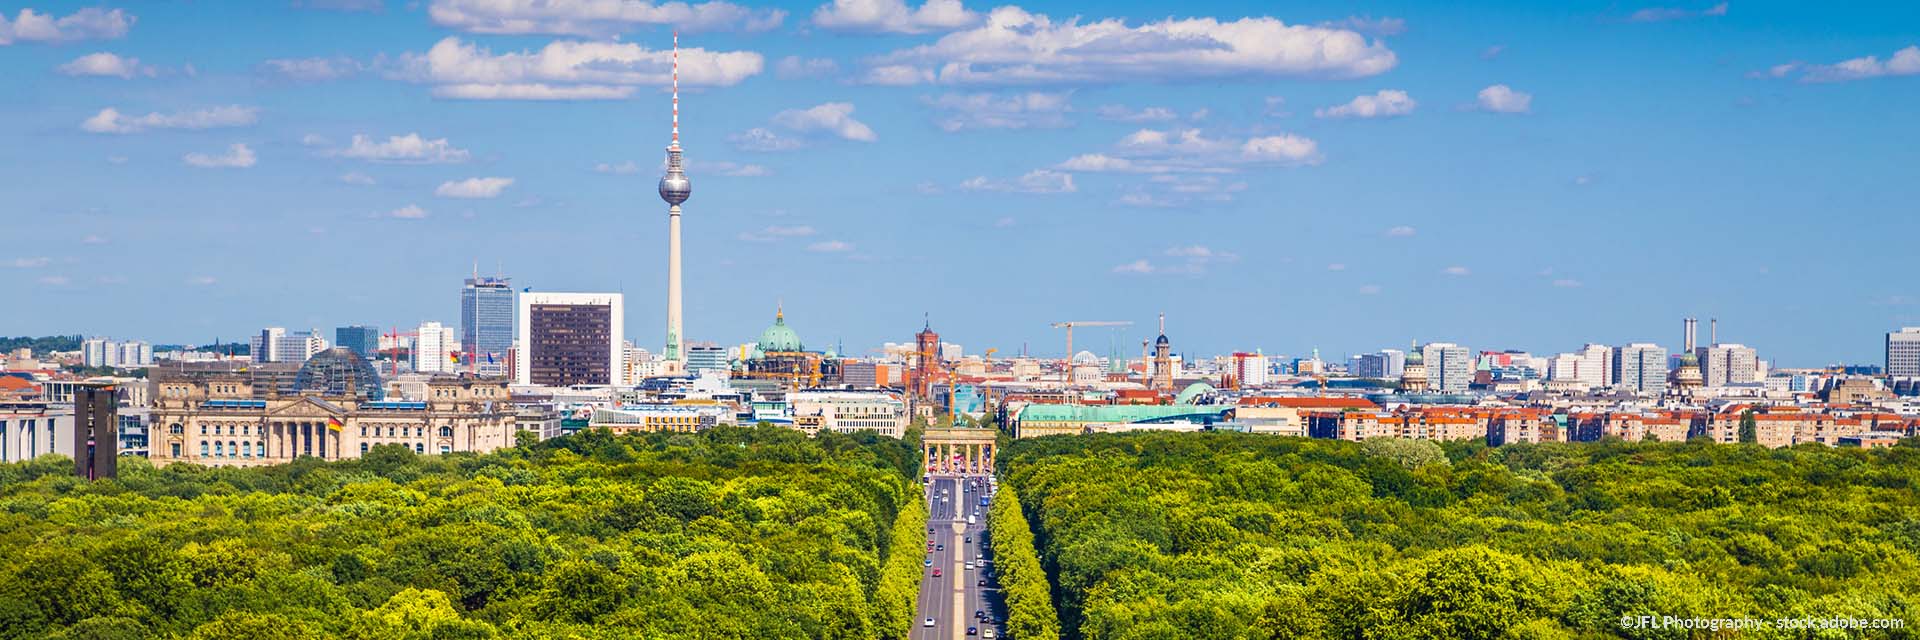 Grünflächen mit Stadtbäume in Berlin binden klimaschädliches CO2